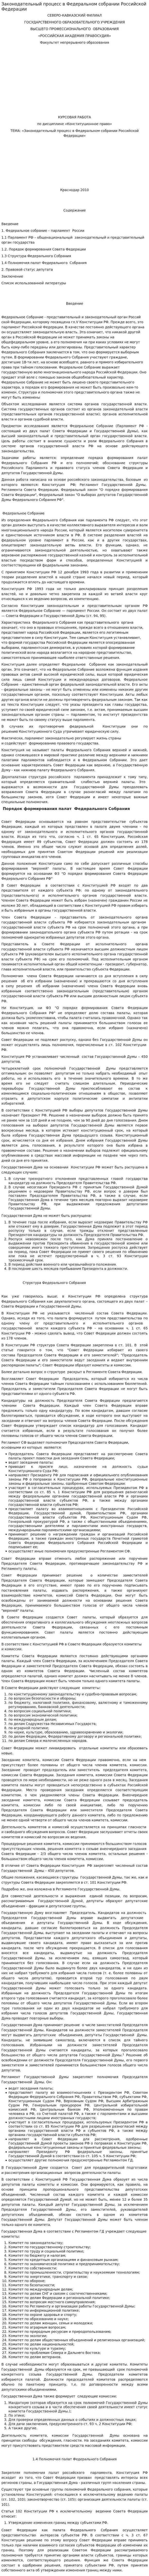 Законодательный процесс в Федеральном собрании Российской Федерации